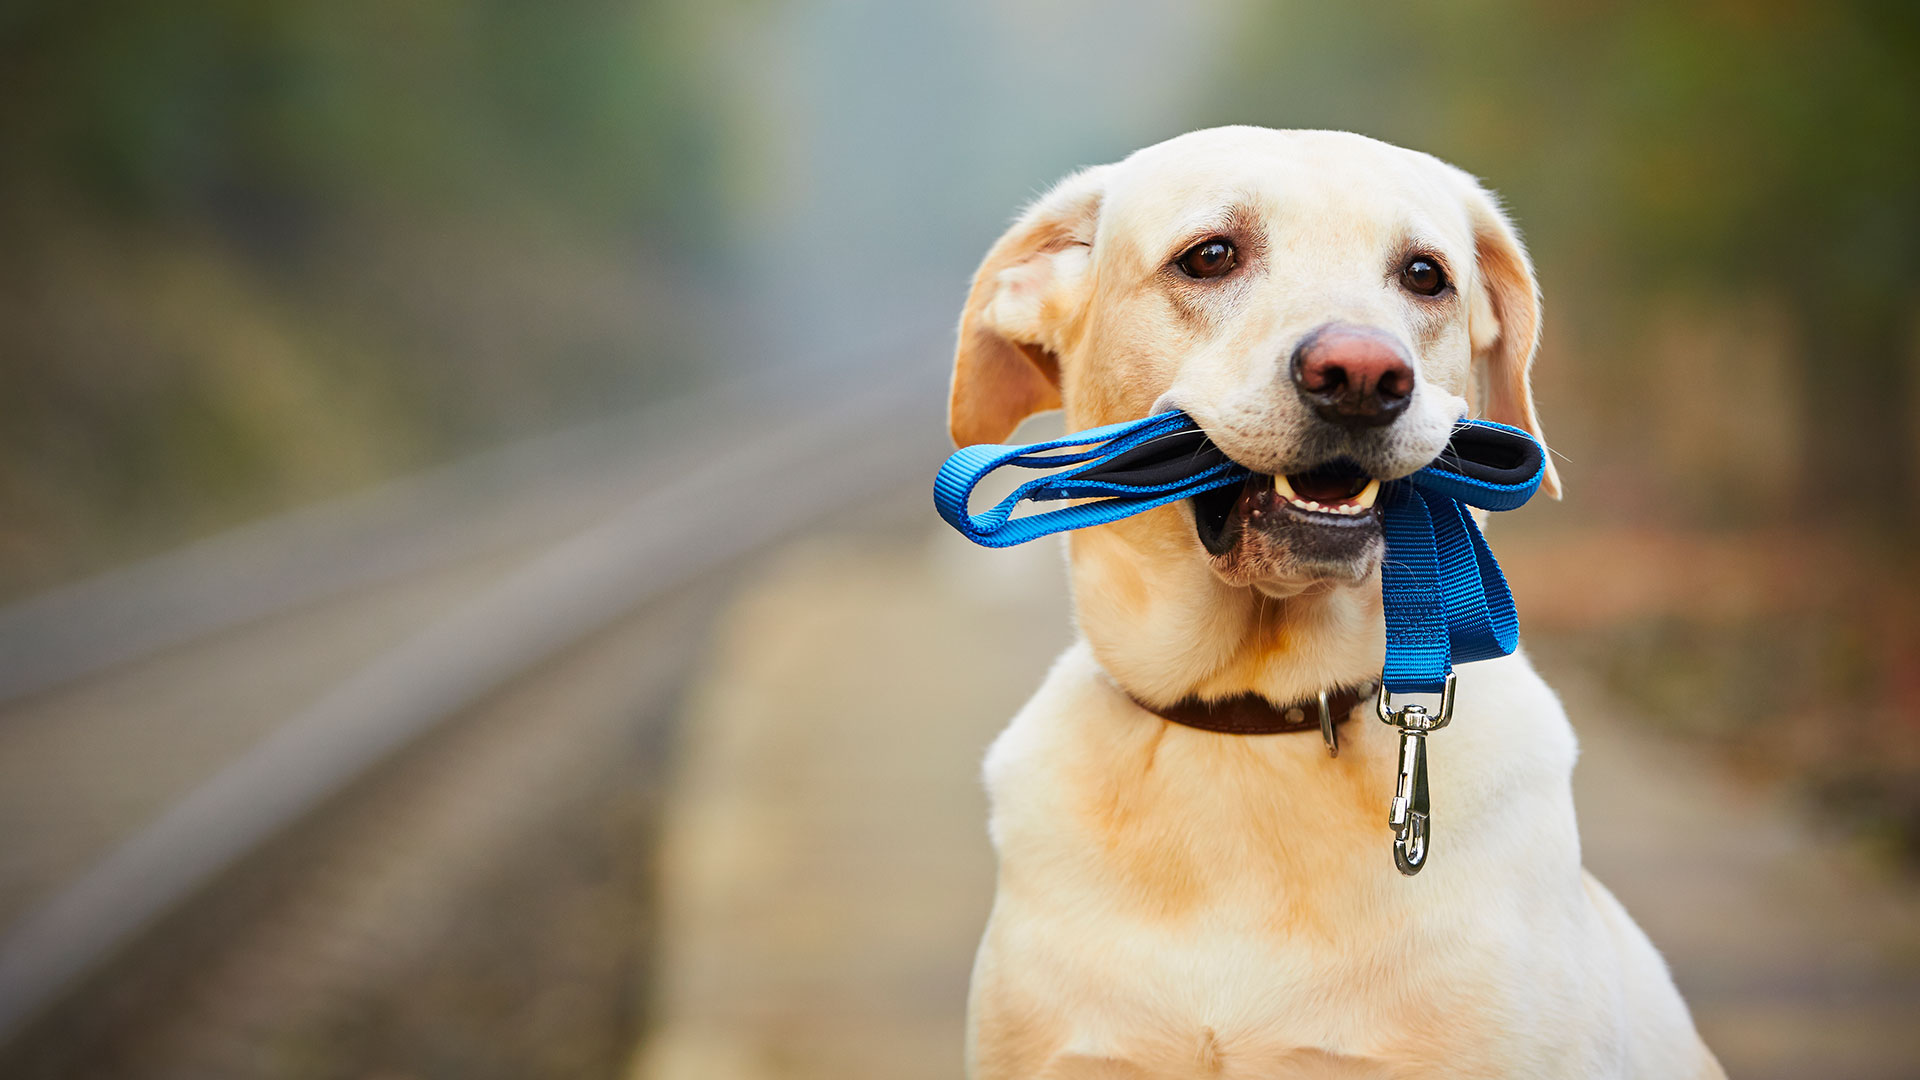 El profesional enumeró a los perros más inteligentes después de encuestar y consultar a más de 200 jueces de obediencia canina (Shutterstock)